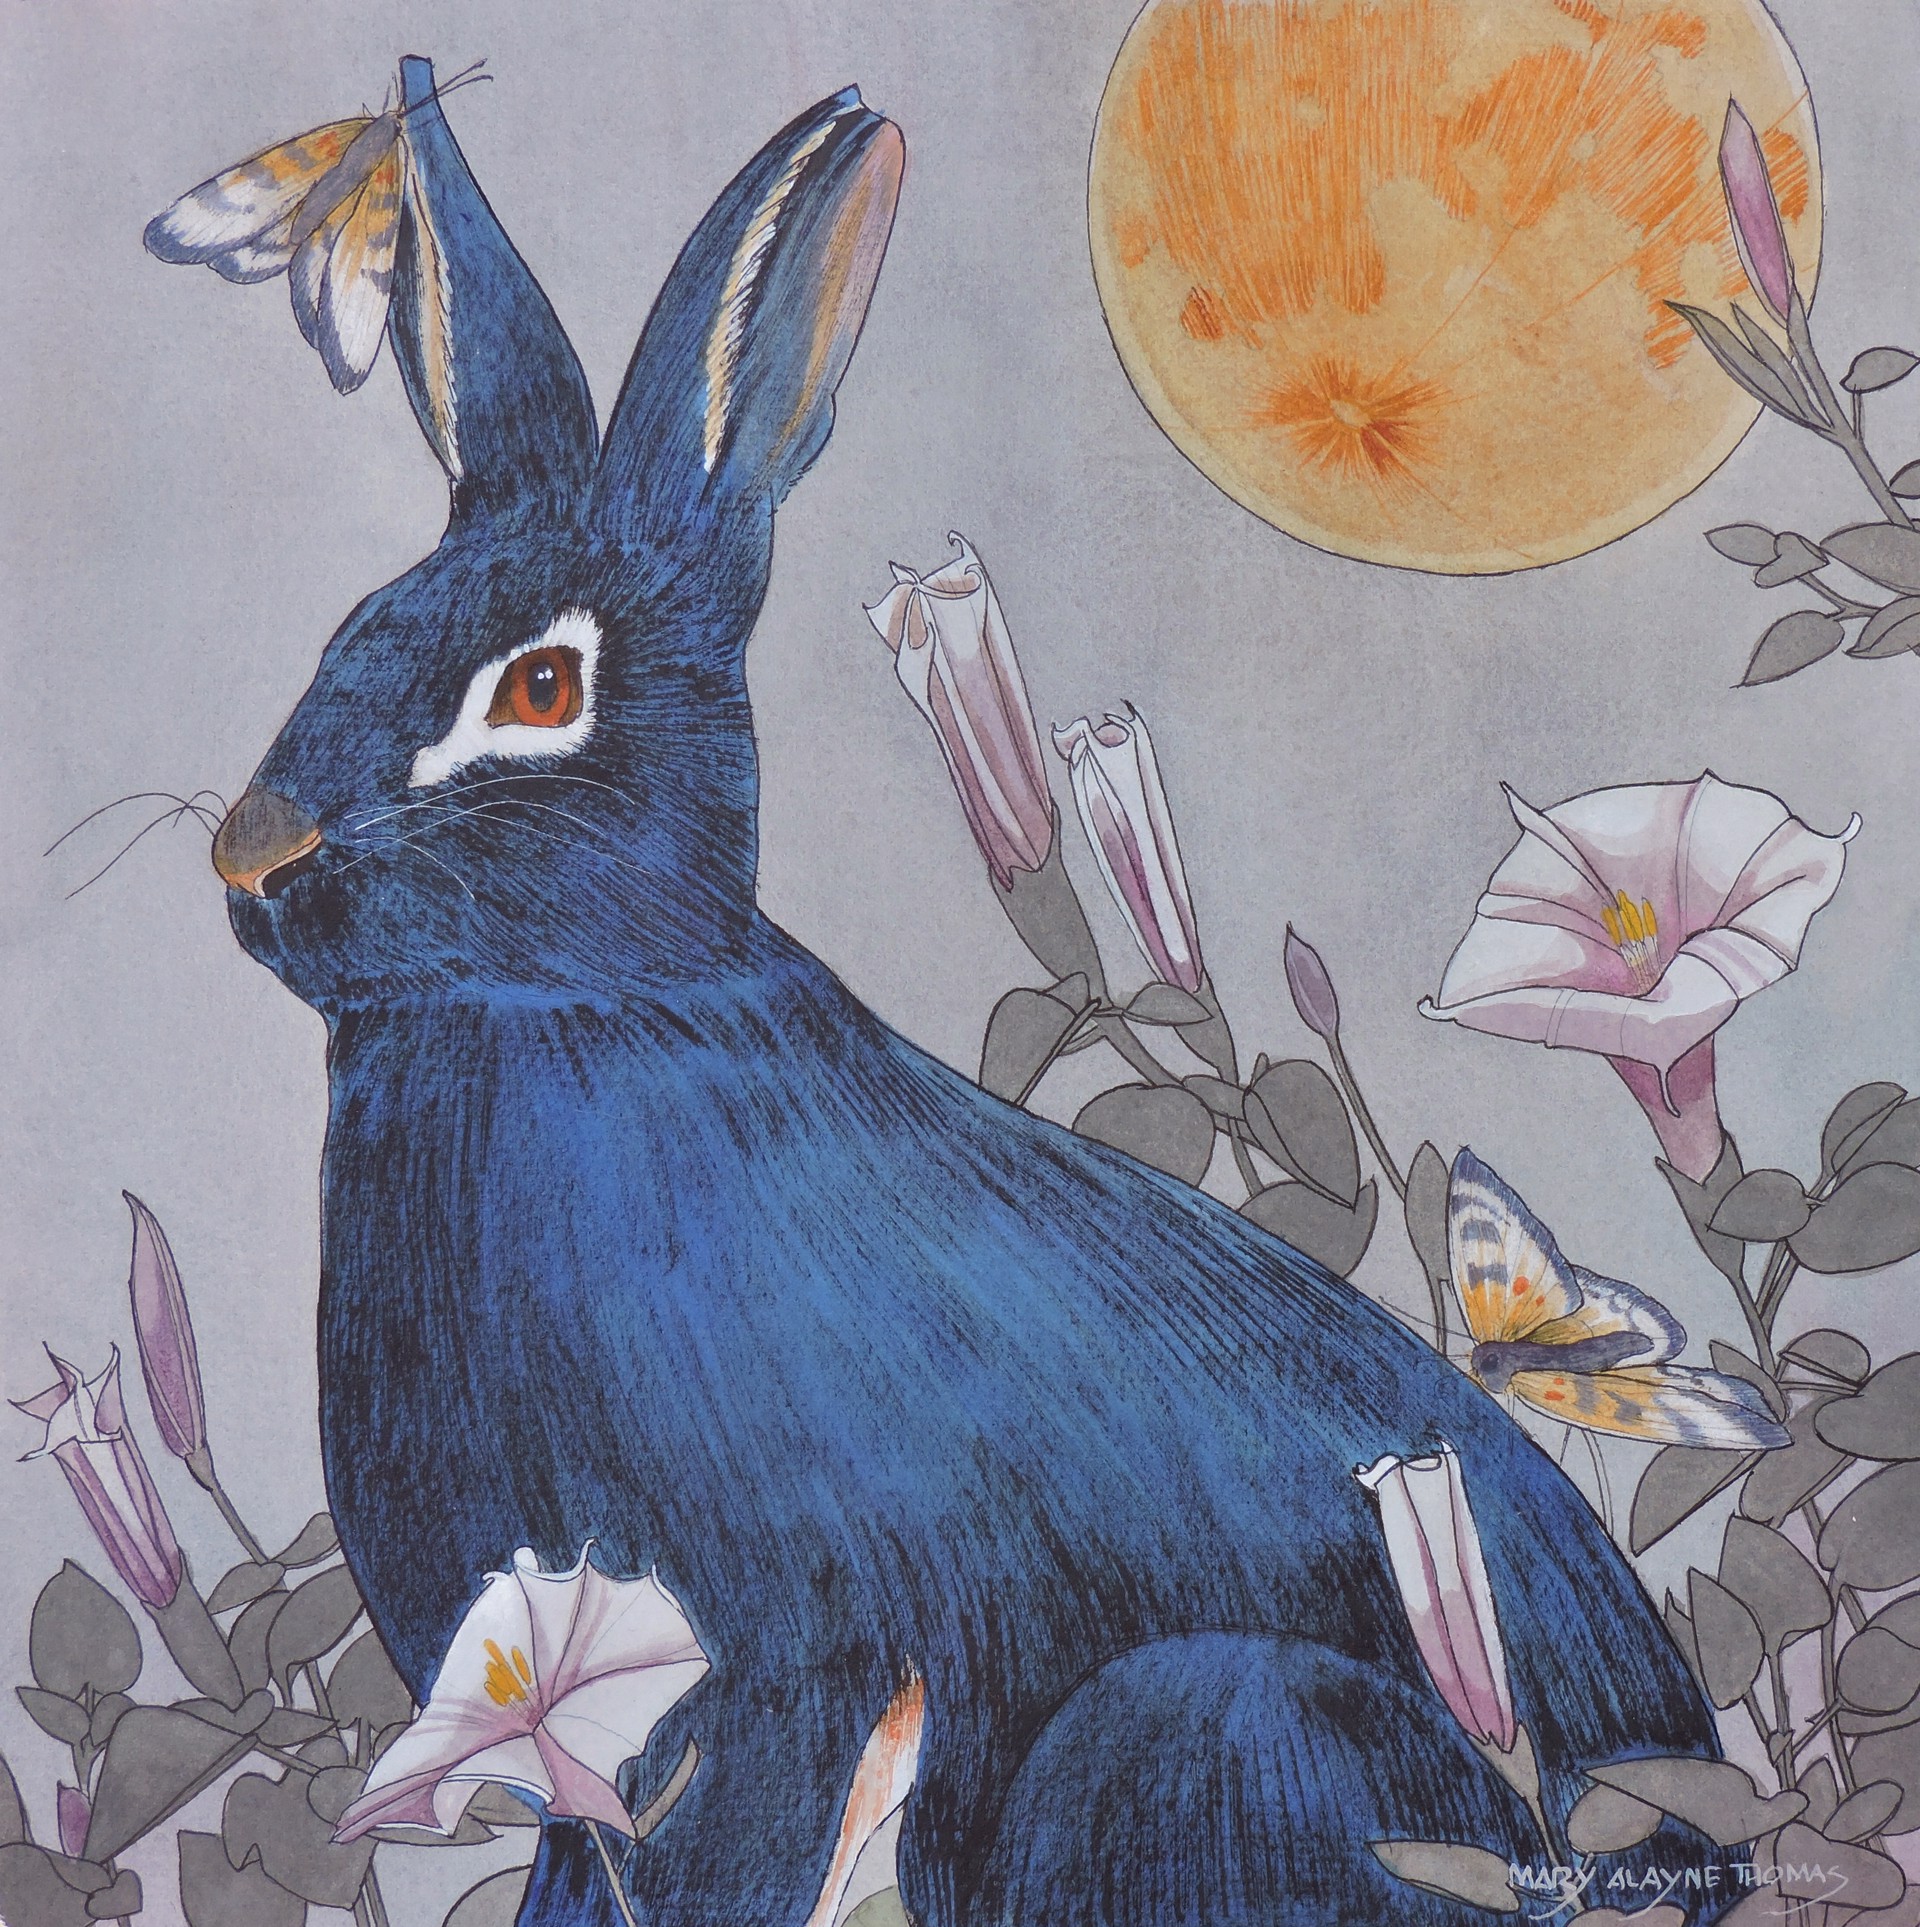 Dreams of the Wild Rabbit by Mary Alayne Thomas